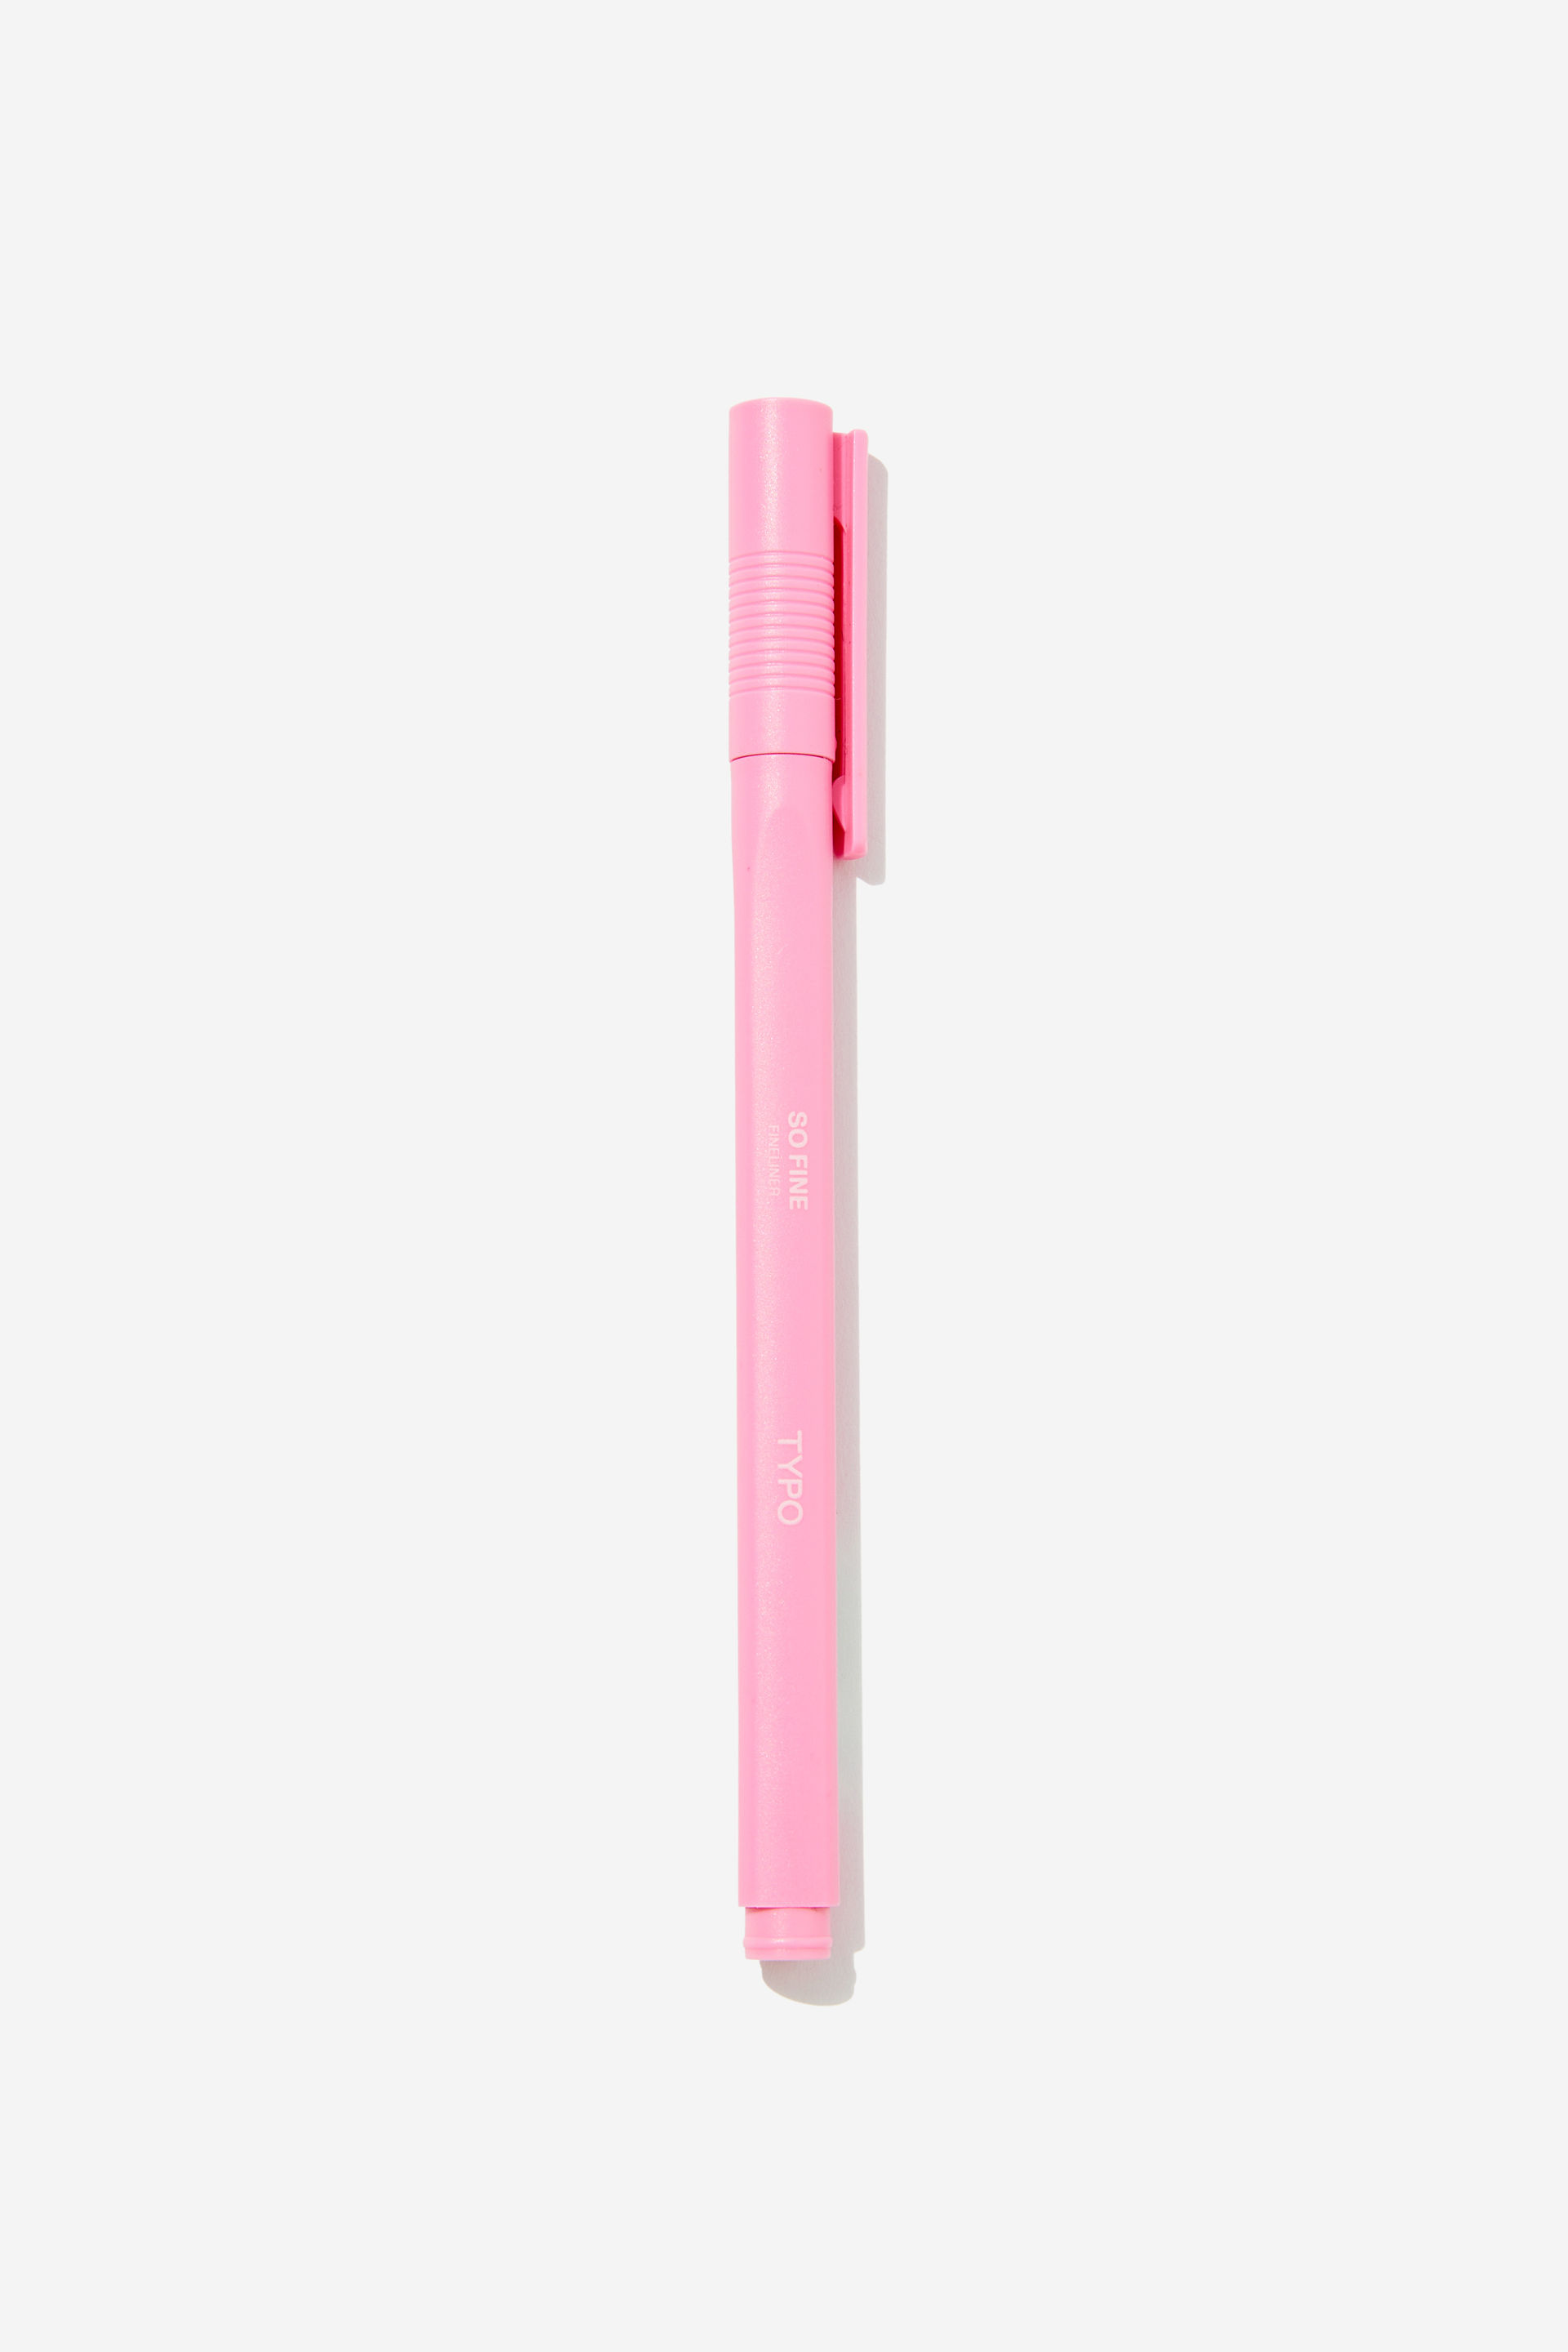 Typo - So Fine Fineliner Pen - Rosa powder